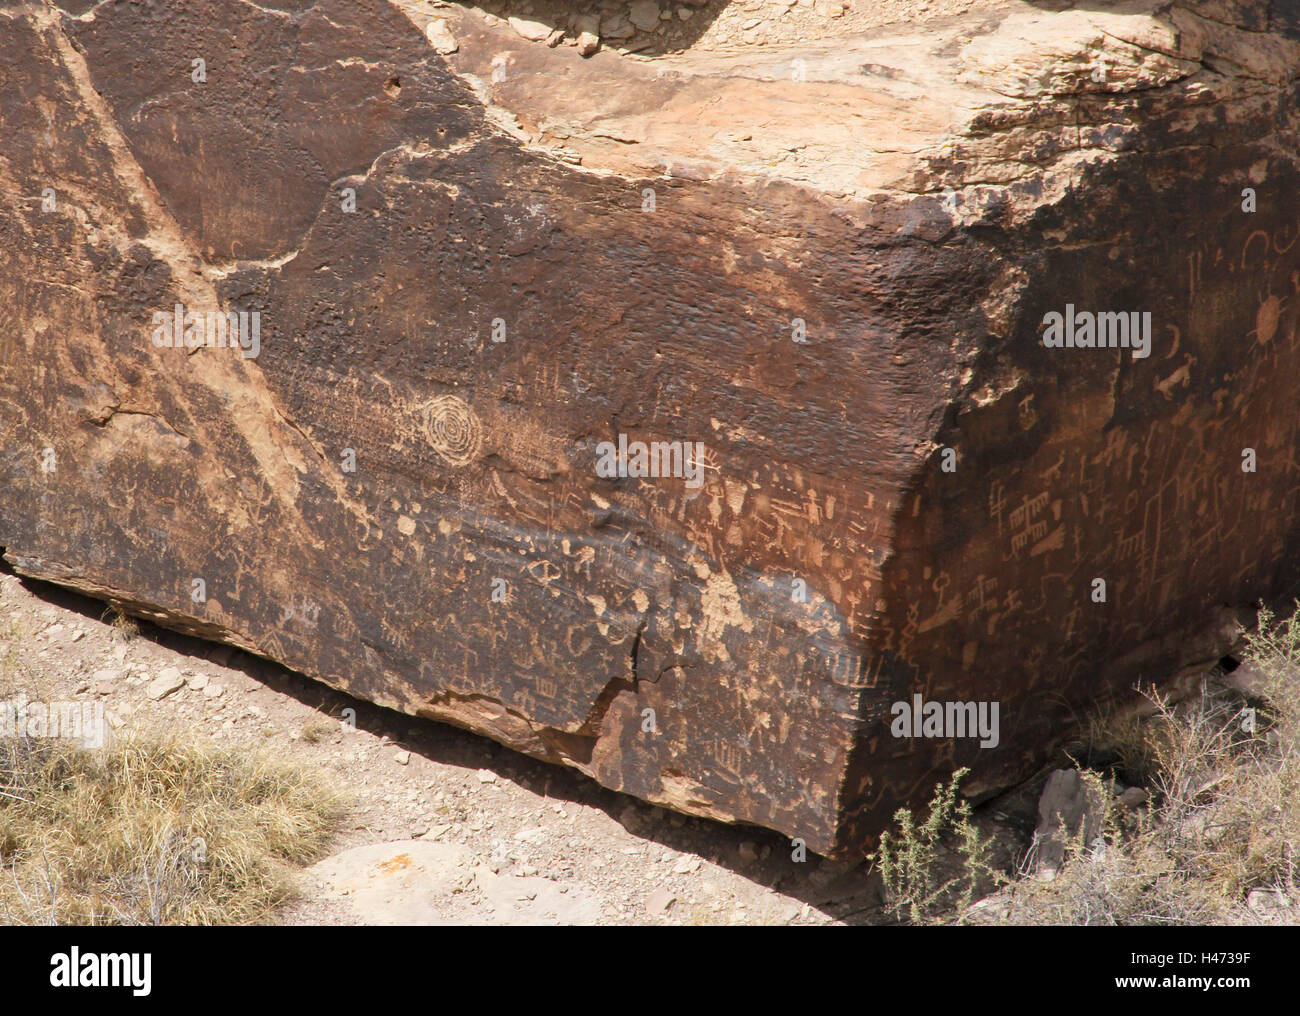 Ruines dans le désert de l'Arizona show ancient American Indian pictogrammes Banque D'Images